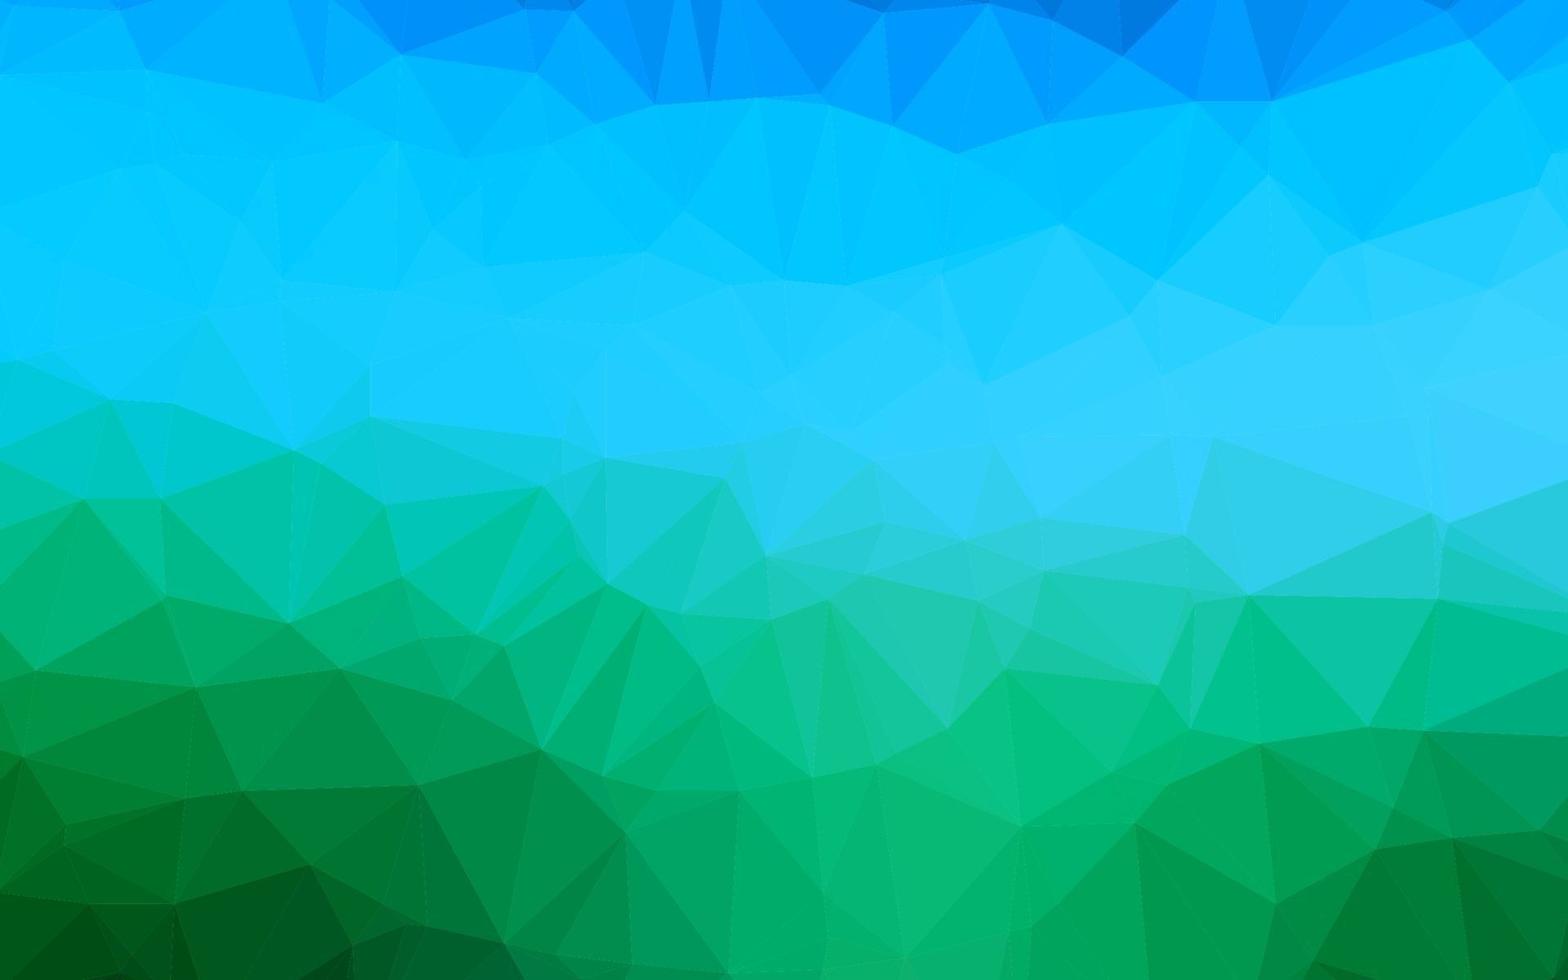 hellblaue, grüne Vektordreieck-Mosaikbeschaffenheit. vektor